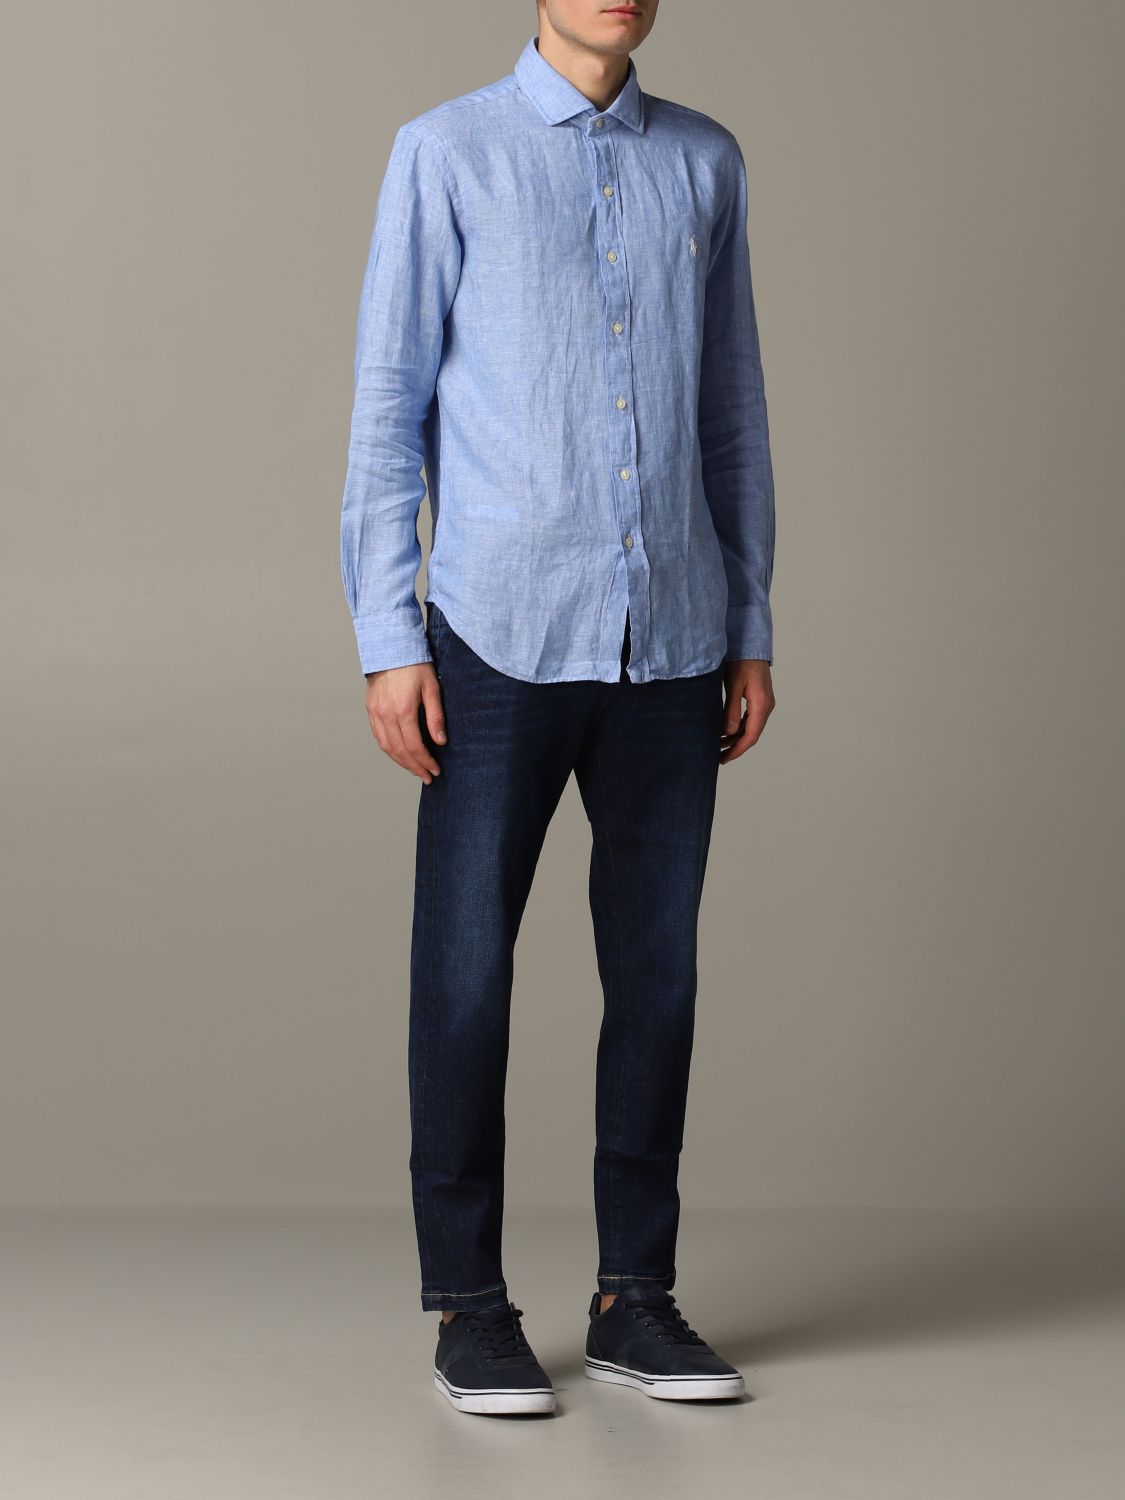 Camisa Polo Ralph Lauren: Camisa Polo Ralph Lauren para hombre azul claro 2